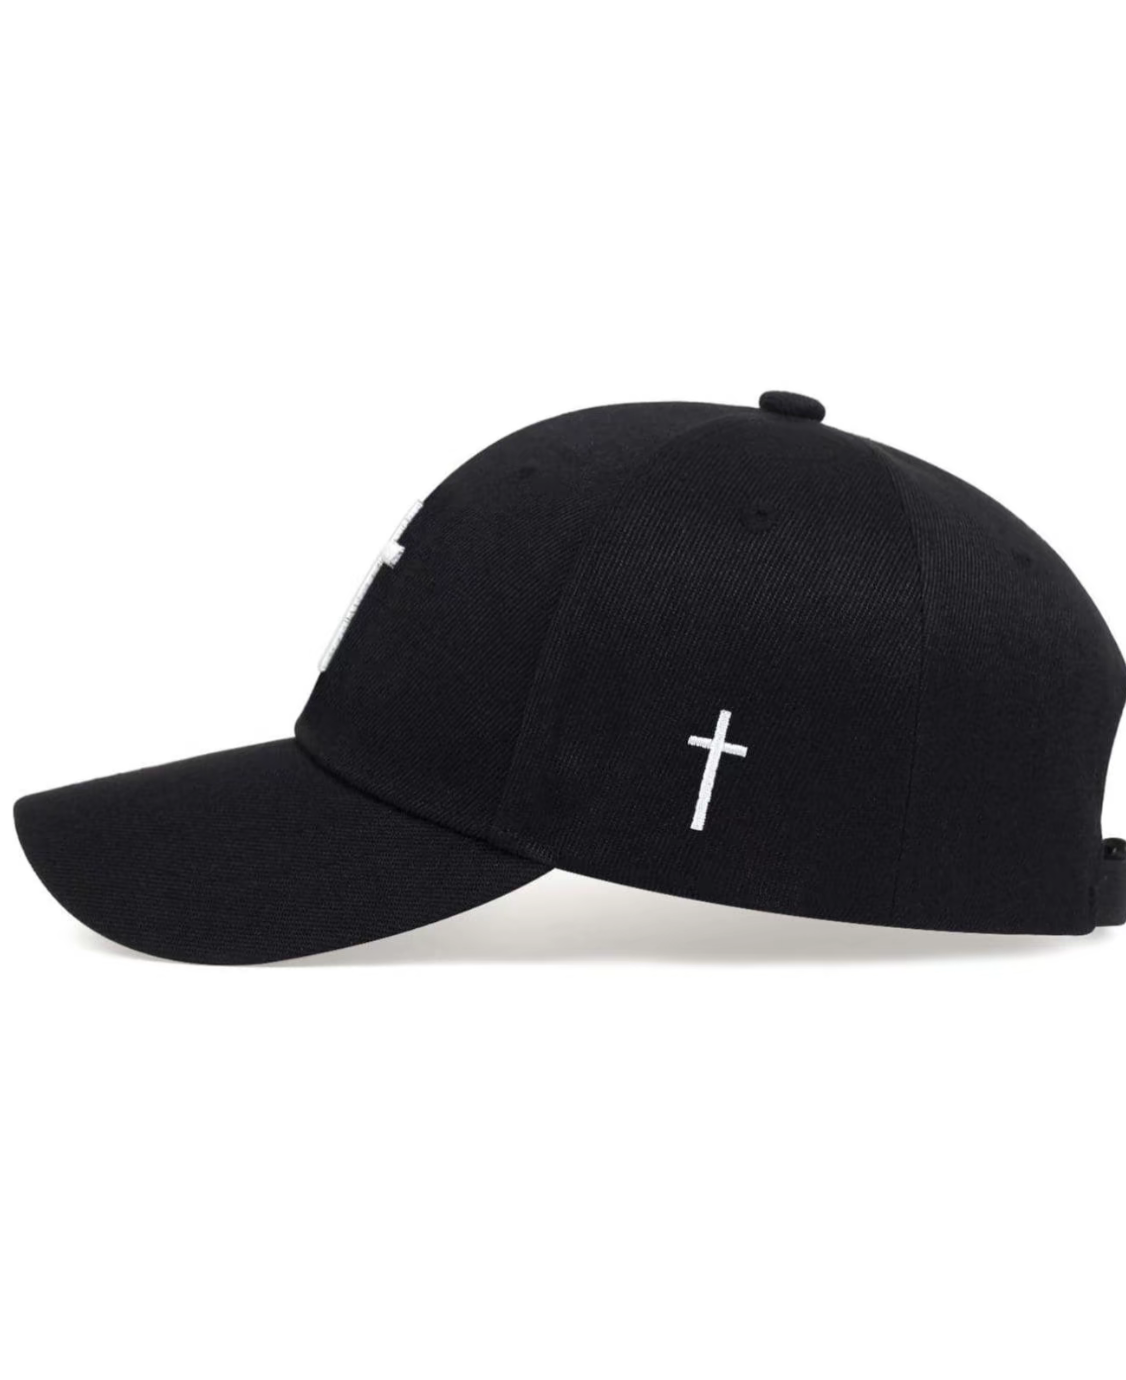 Cross Hat